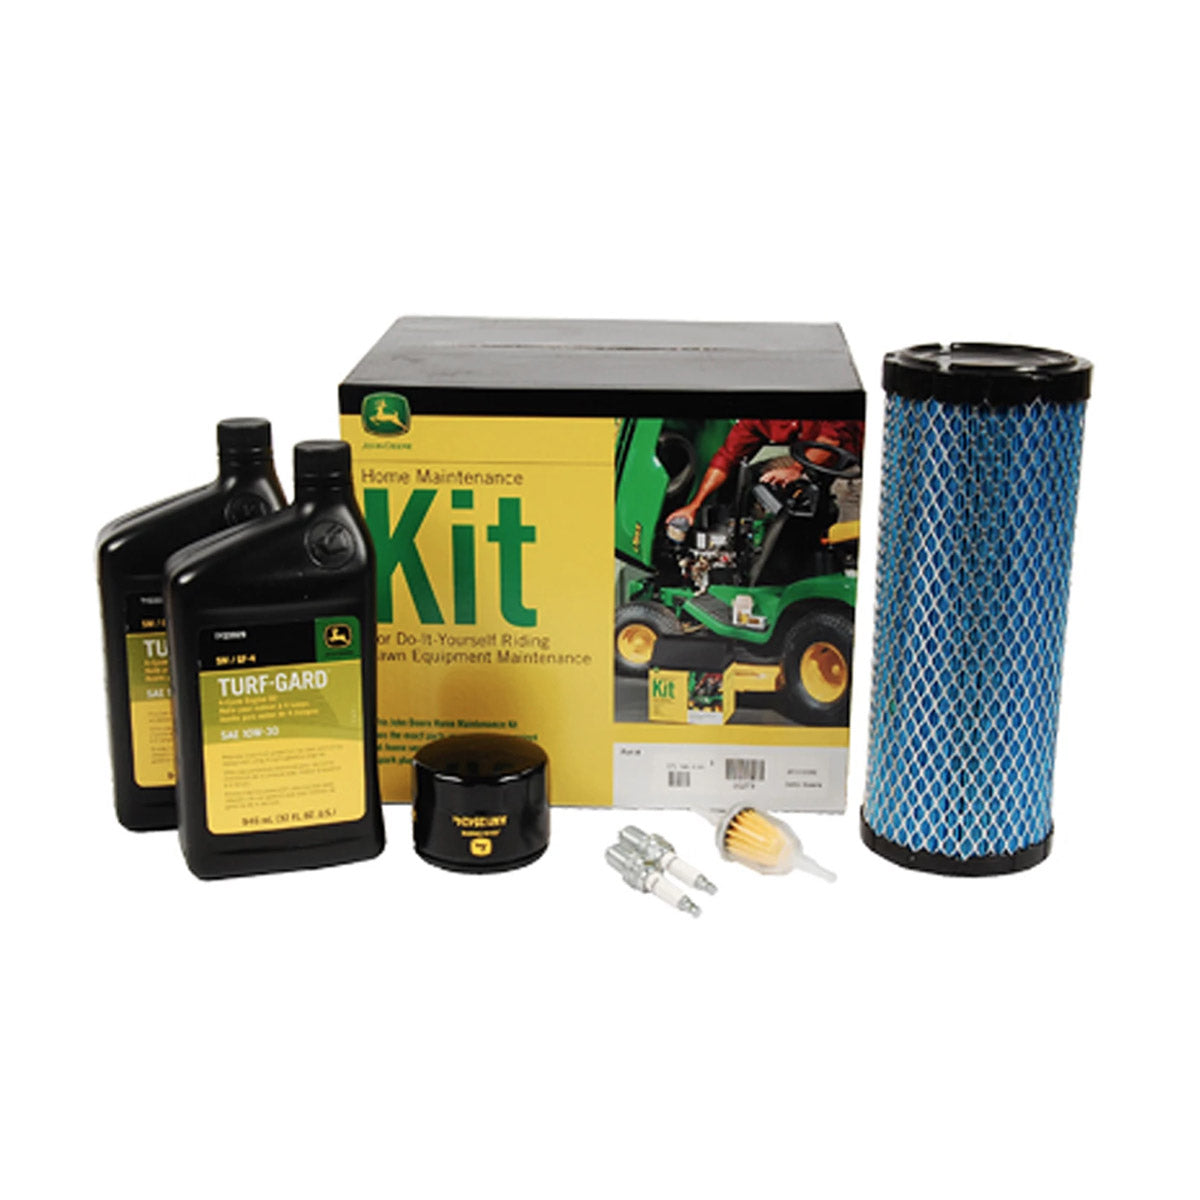 John Deere Home Maintenance Kit XUV550 & XUV550 S4 - LG273